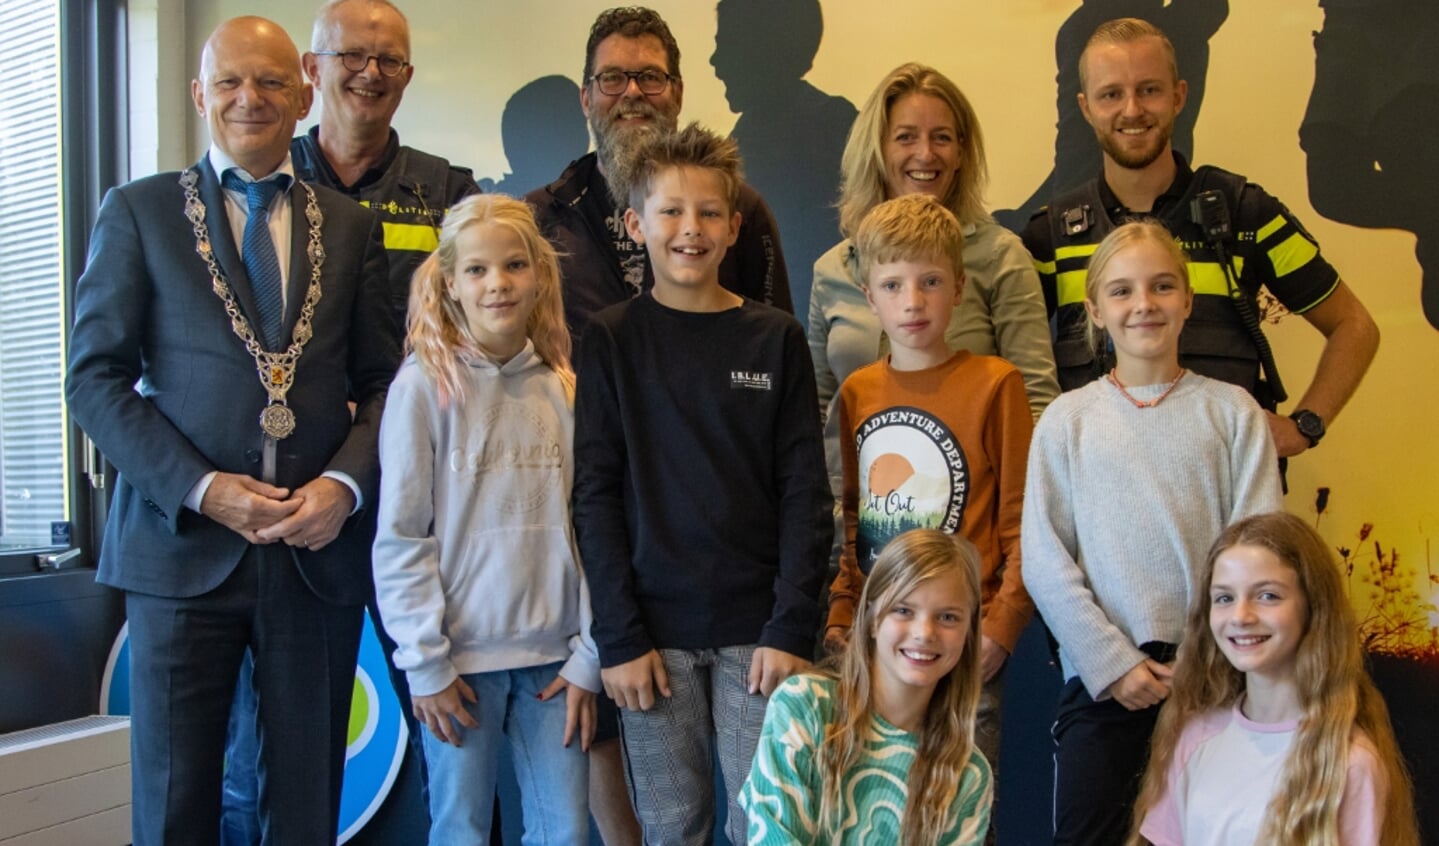 Leerlingen van IKC Het Spectrum aan de Boslaan met burgemeester Wijbenga, politie Vlaardingen en leerkracht op de foto.